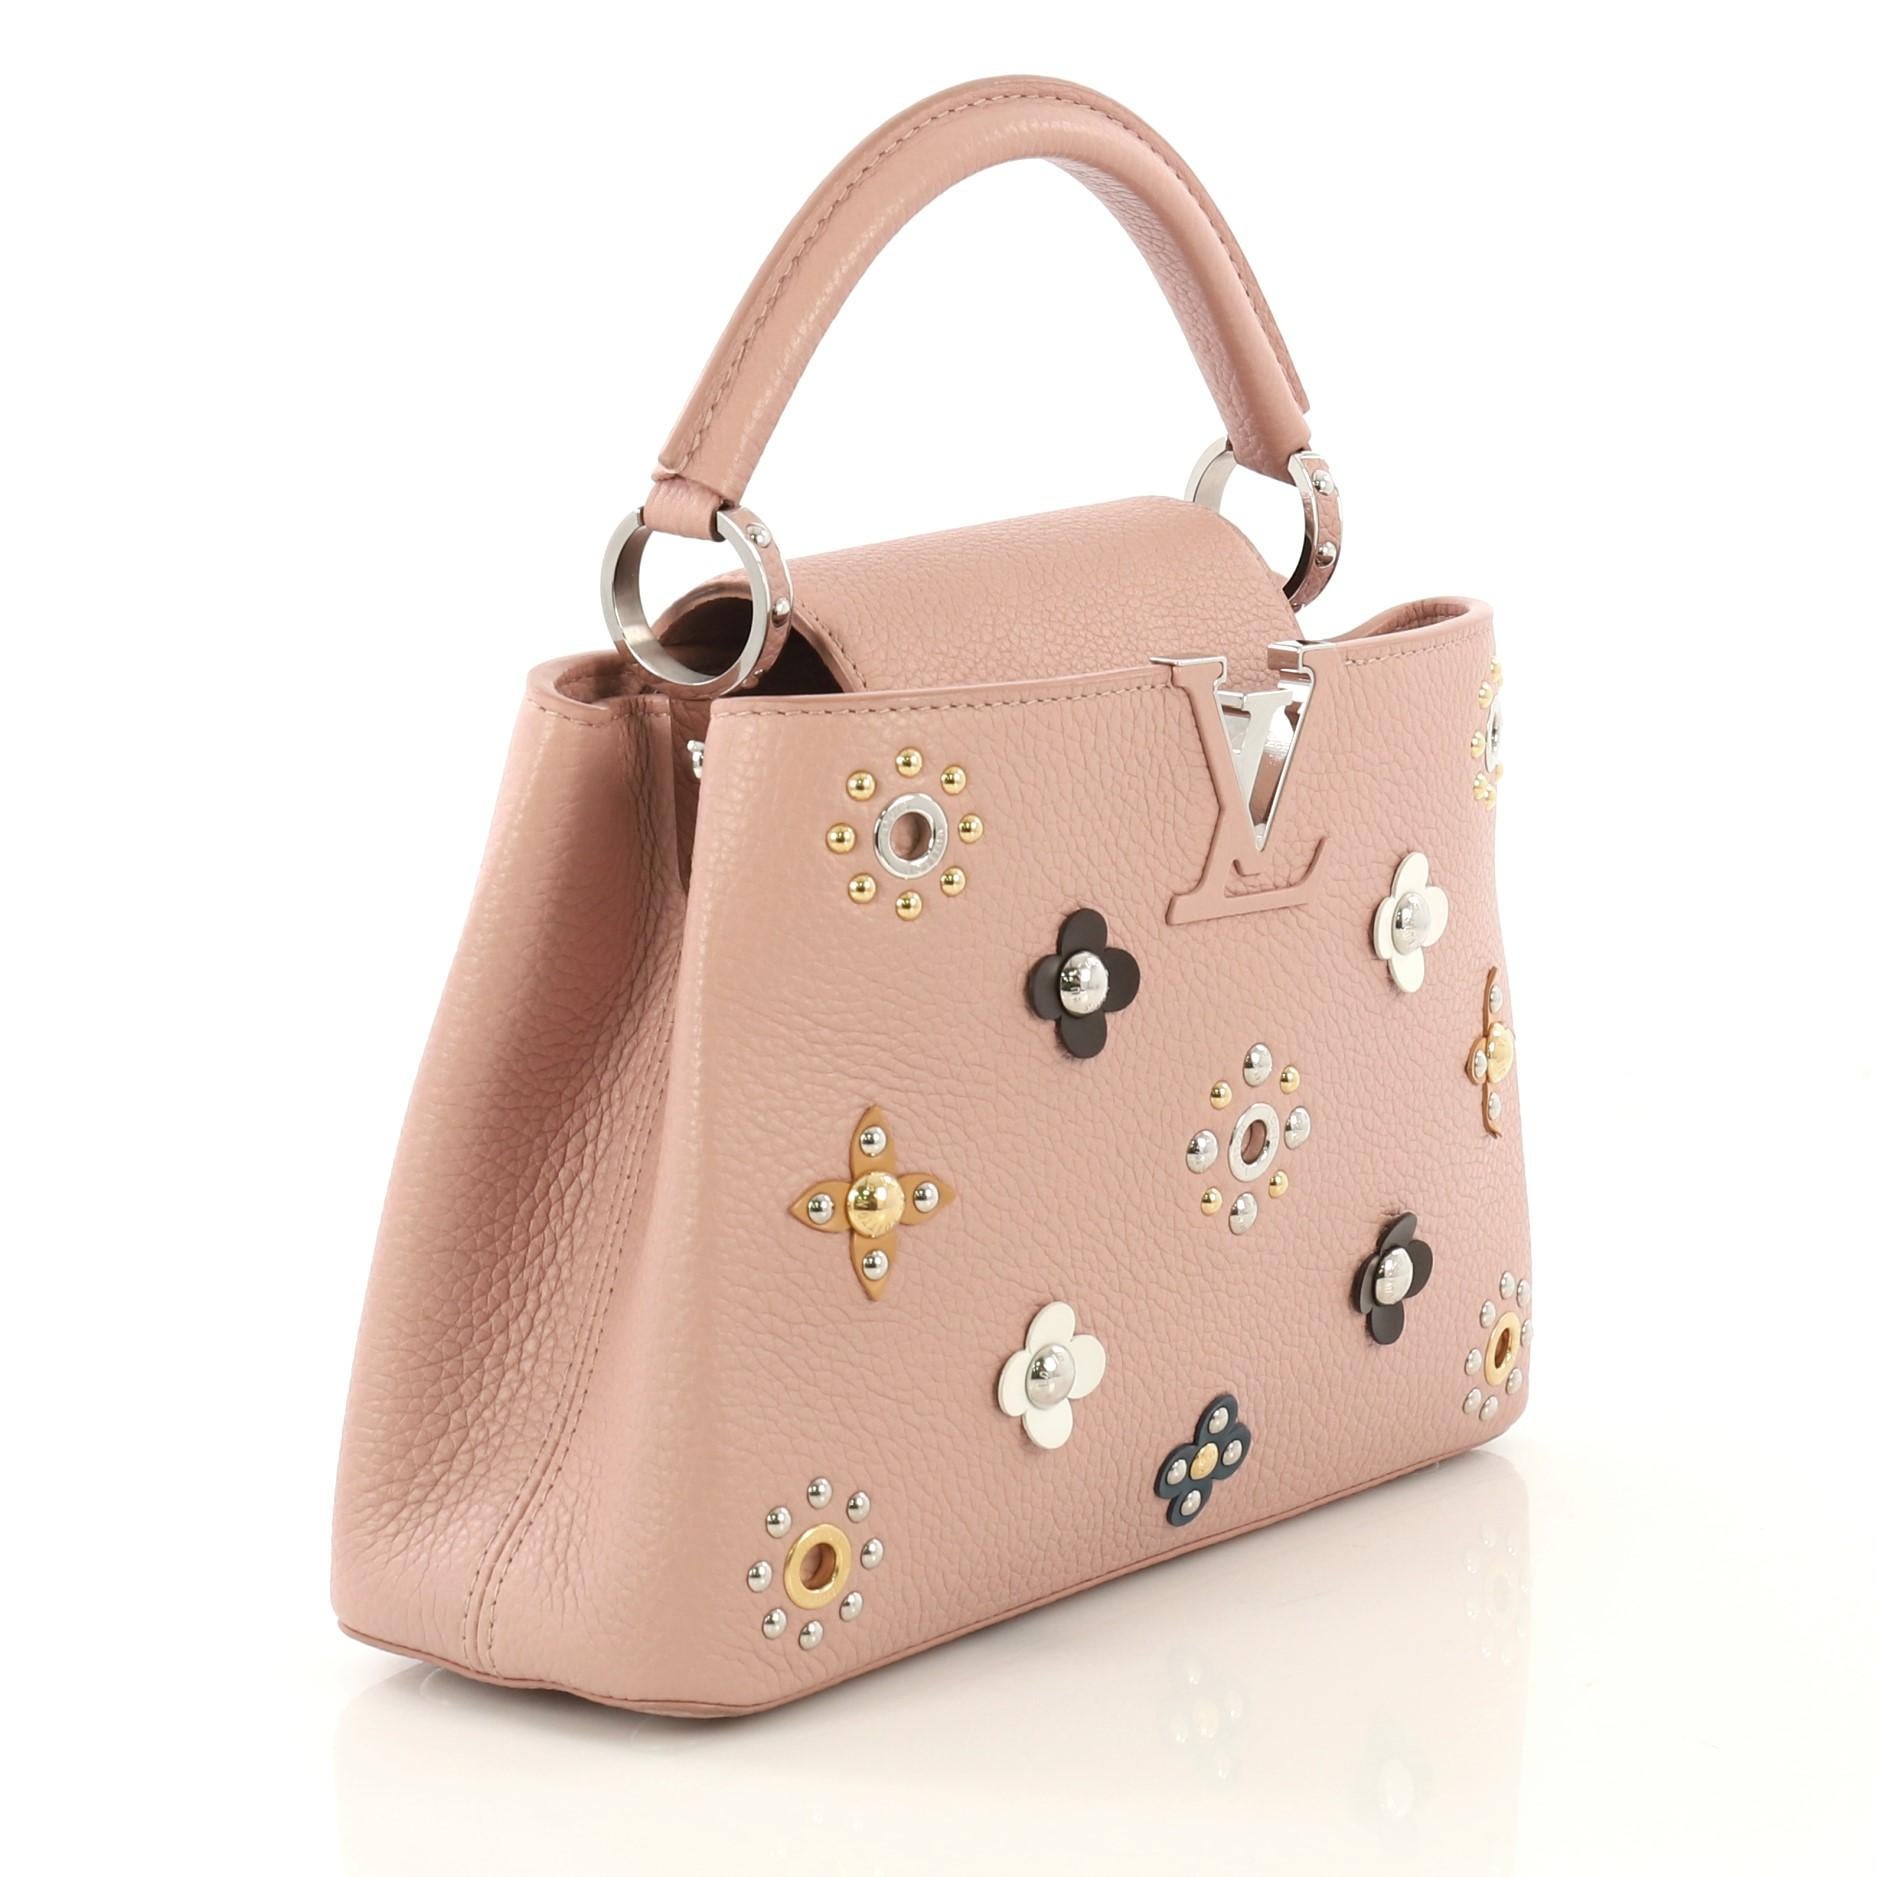 louis vuitton embellished handbags